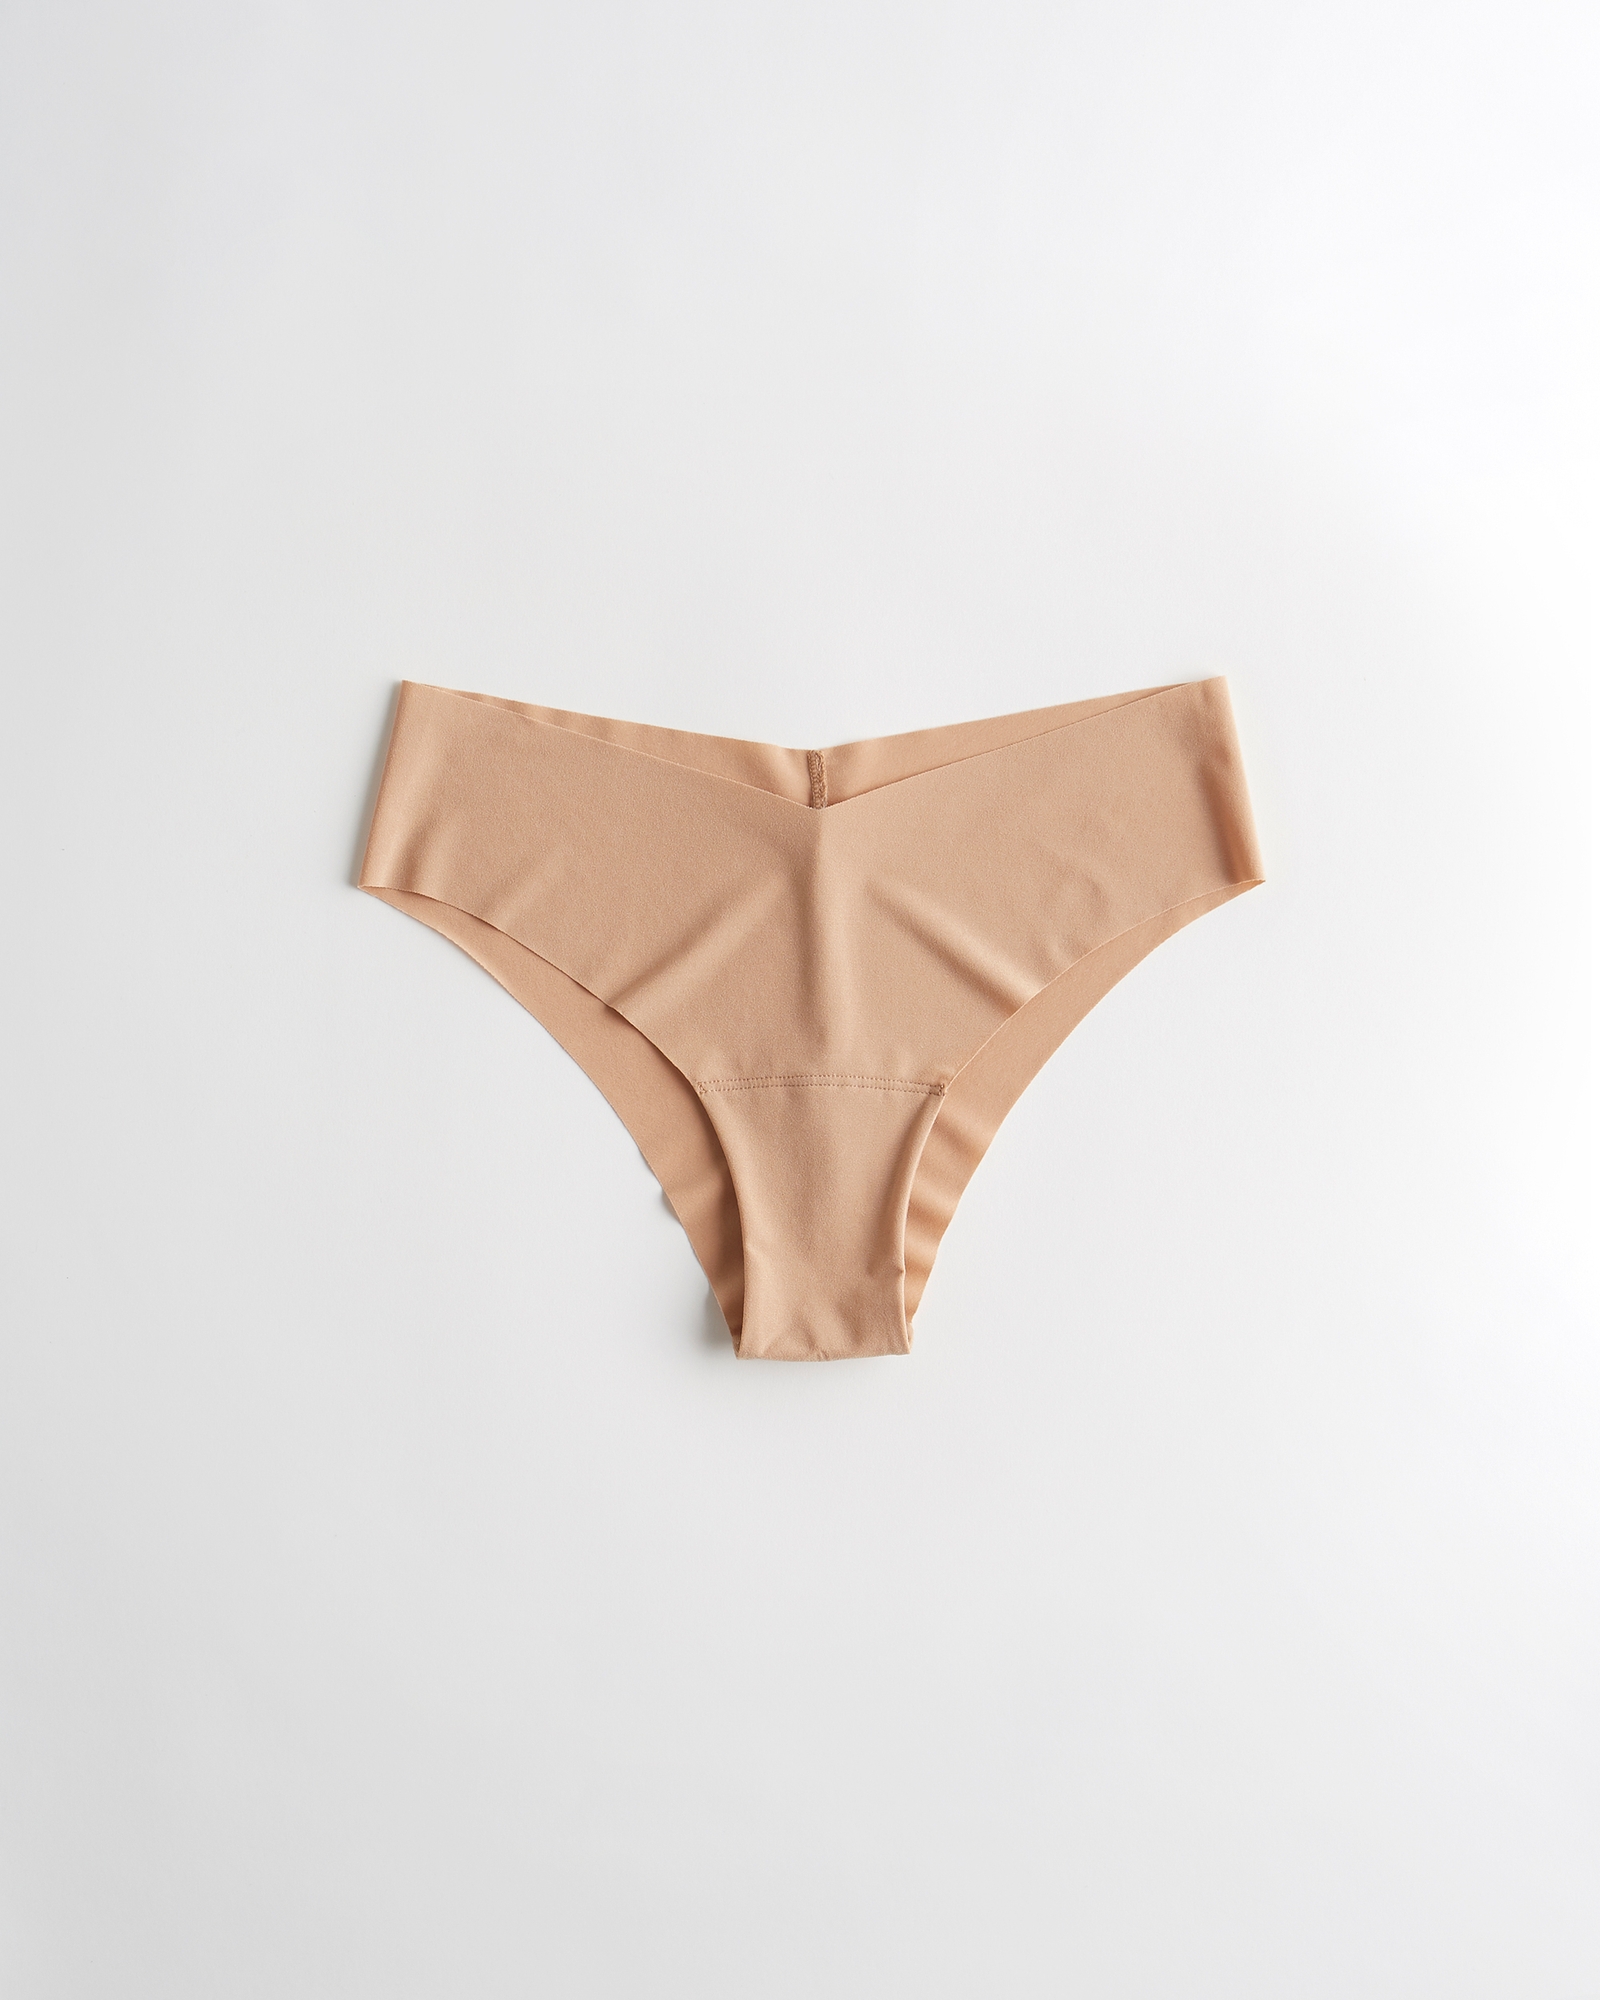 Women's Gilly Hicks No-Show Cheeky Underwear